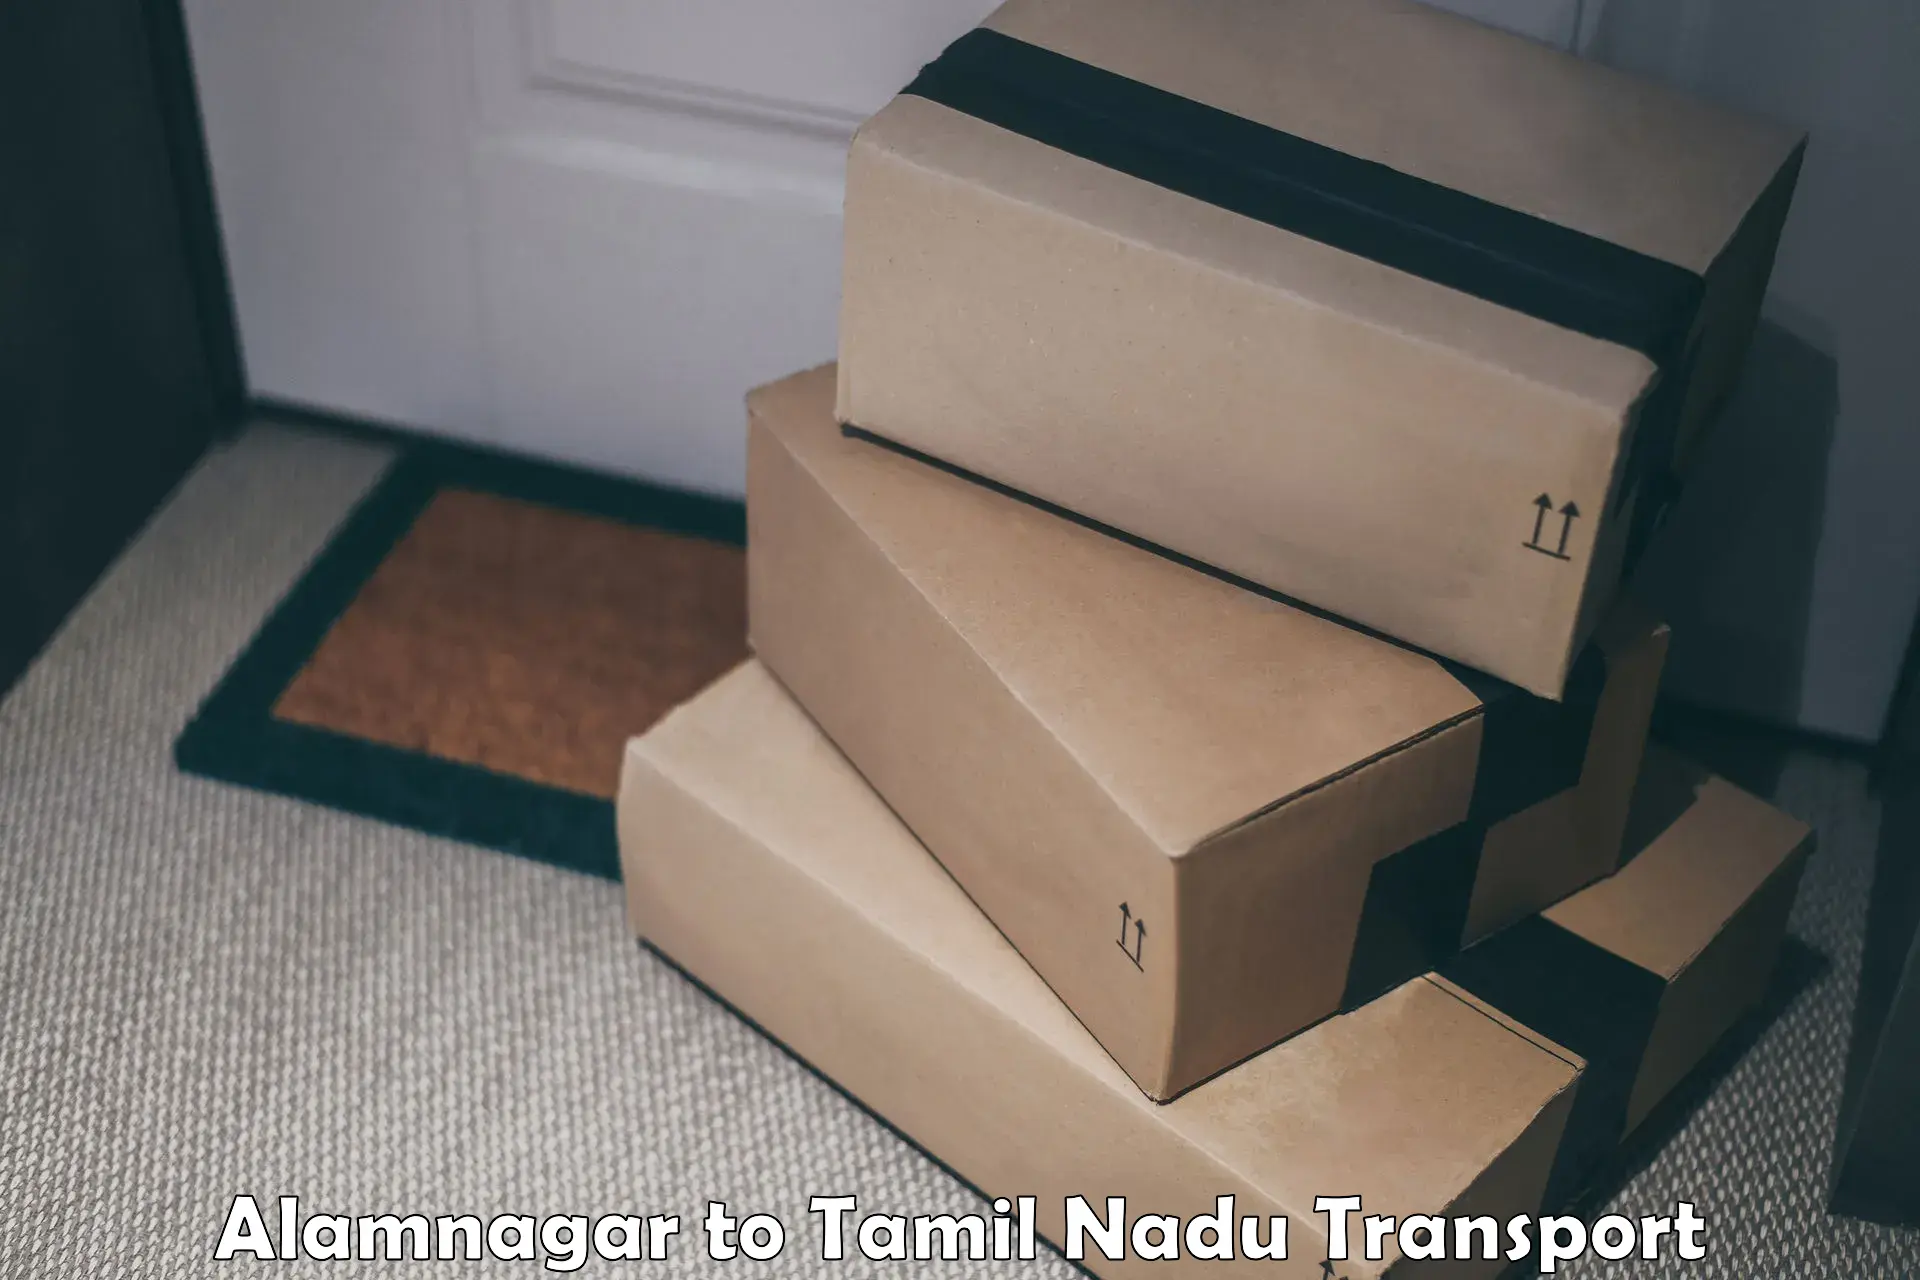 Transportation solution services Alamnagar to Tamil Nadu